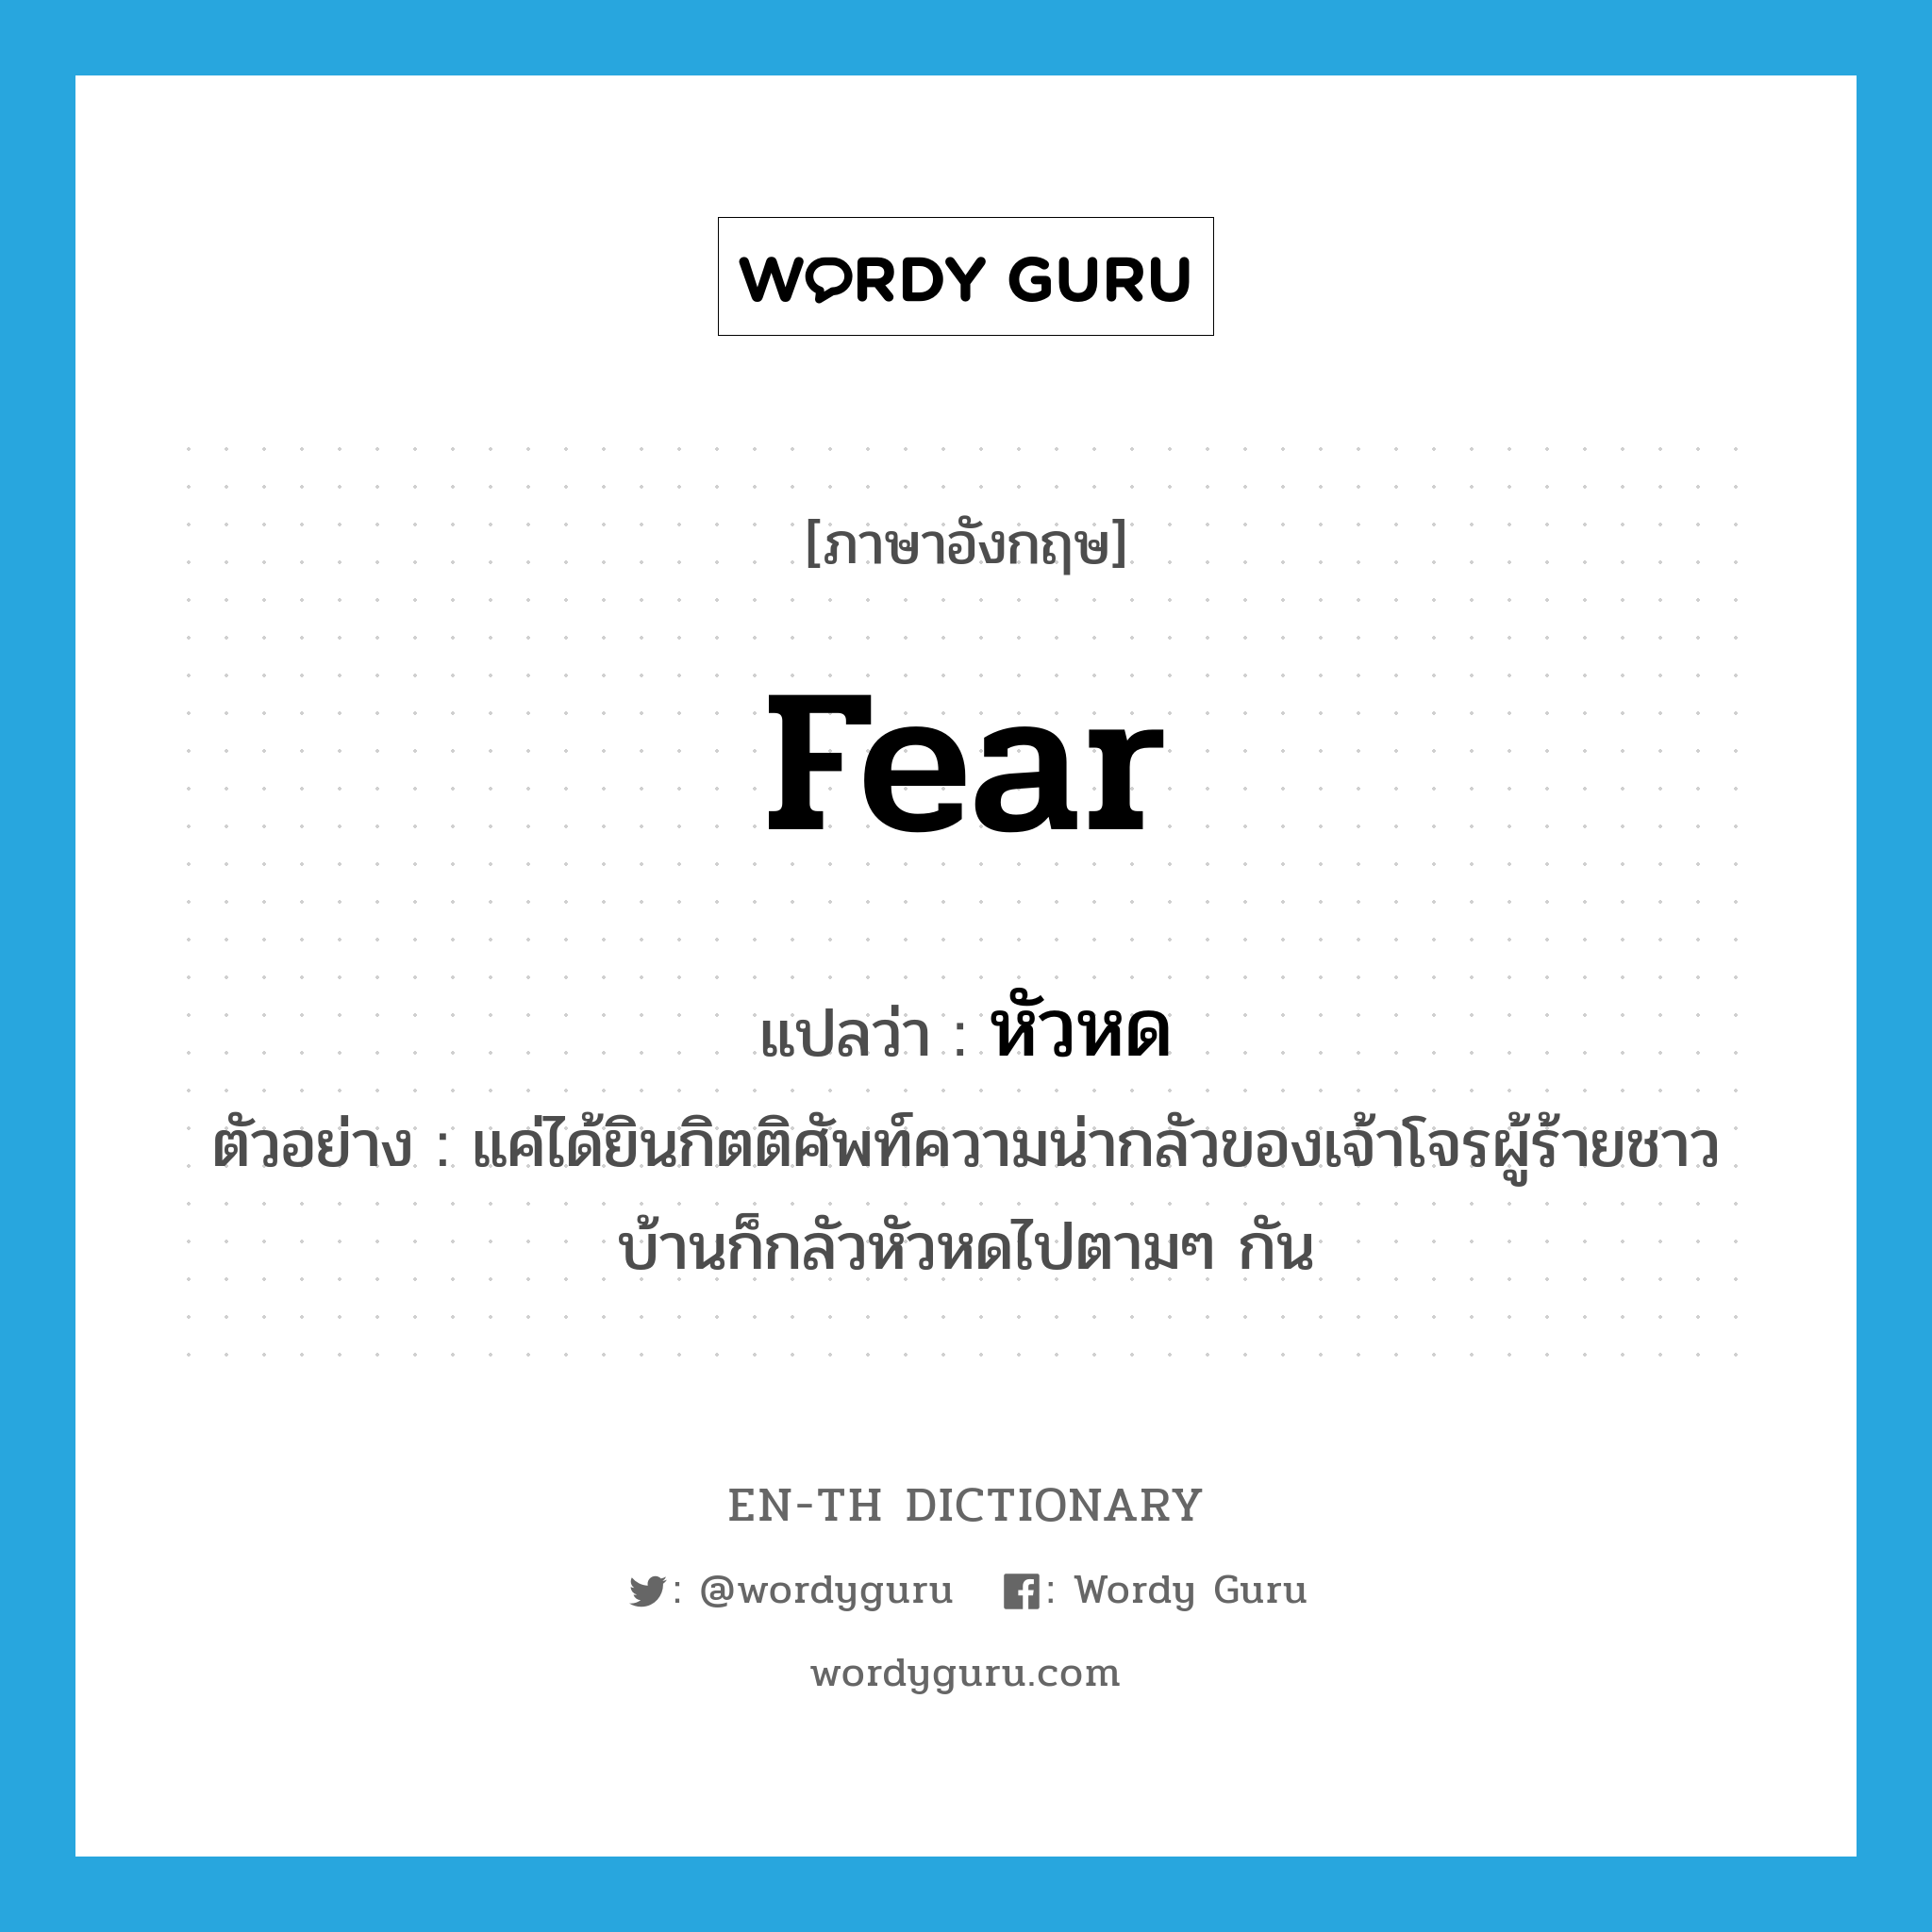 fear แปลว่า?, คำศัพท์ภาษาอังกฤษ fear แปลว่า หัวหด ประเภท V ตัวอย่าง แค่ได้ยินกิตติศัพท์ความน่ากลัวของเจ้าโจรผู้ร้ายชาวบ้านก็กลัวหัวหดไปตามๆ กัน หมวด V